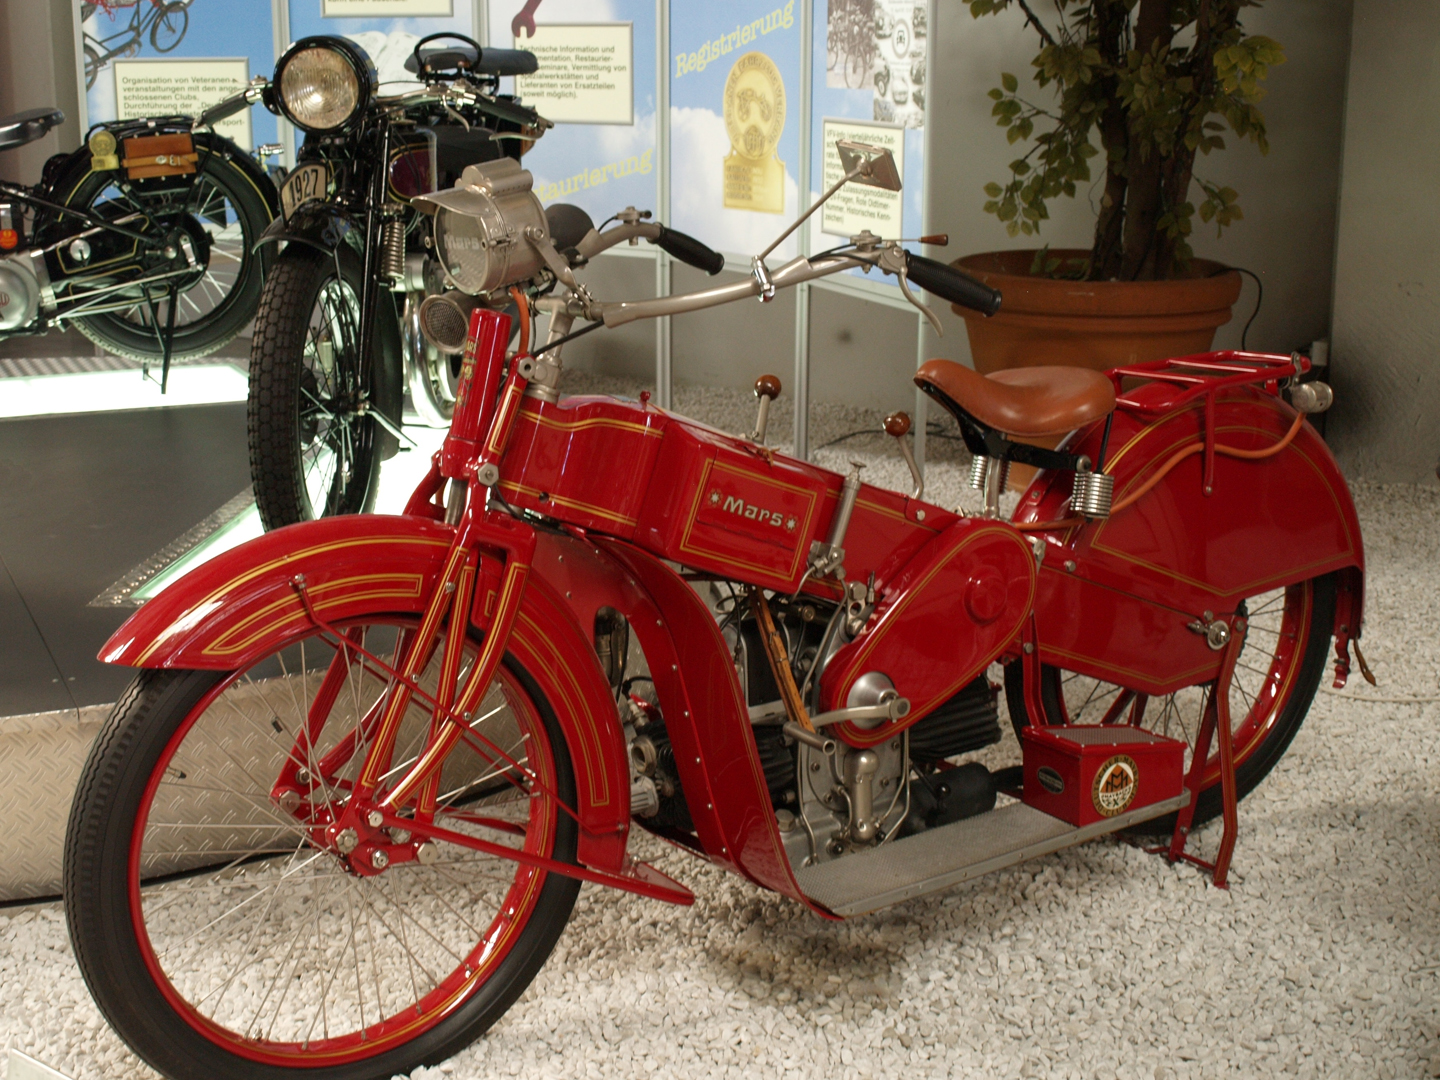 Musée de l’automobile et technologique à Sinsheim, la légendaire « Mars blanche » en rouge (956 cm3)